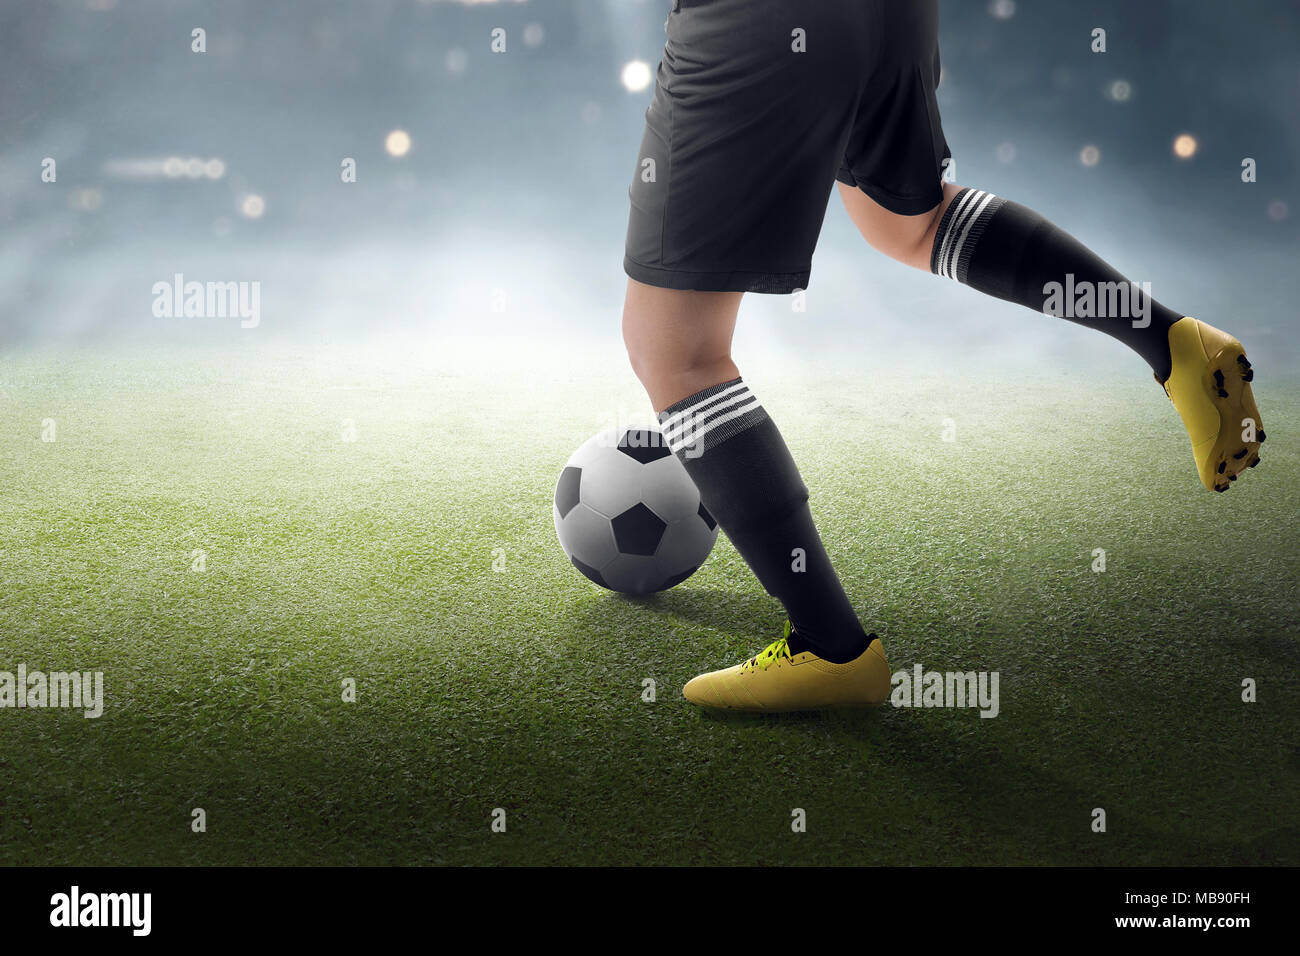 Giocatore di calcio cercando di calciare la palla sul campo in erba Foto Stock